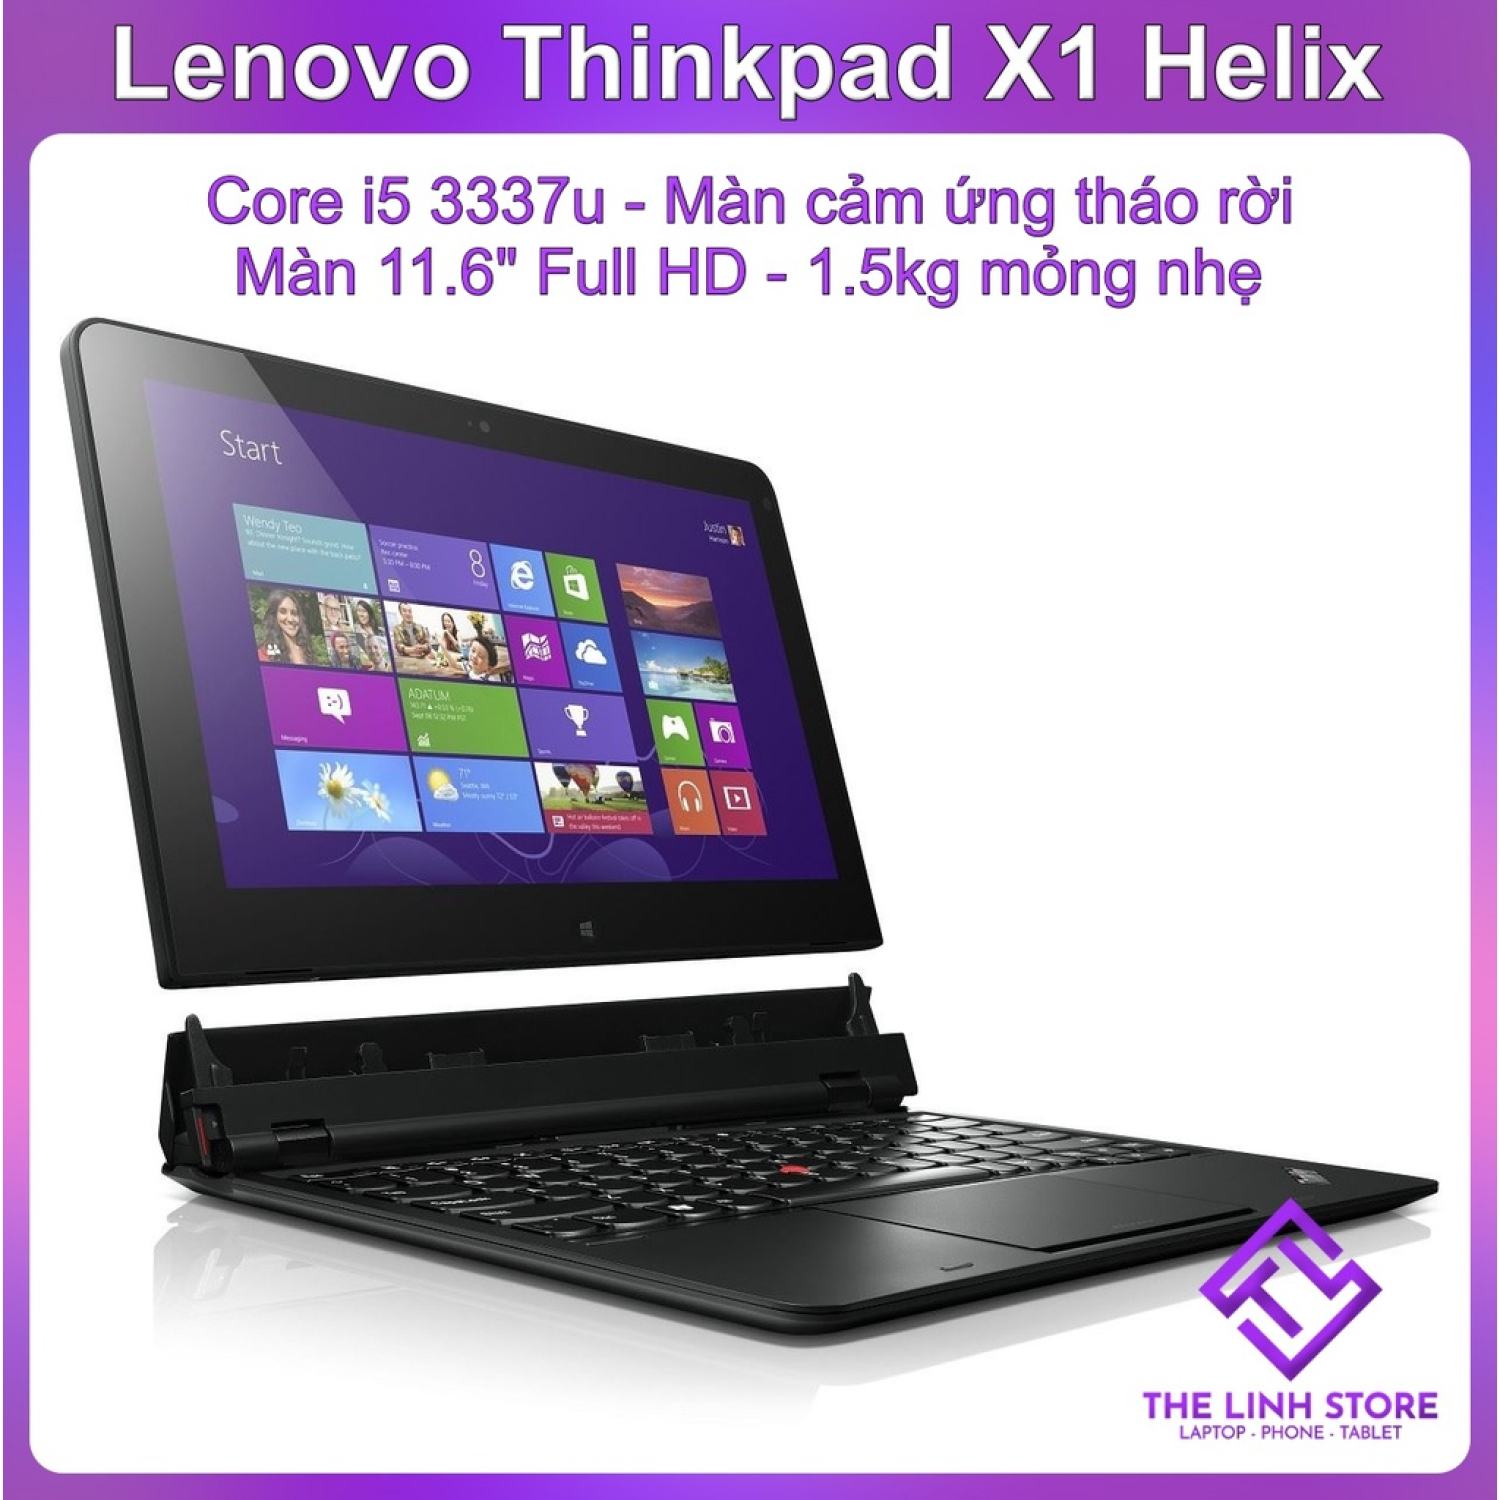 Laptop 2 trong 1 Lenovo Thinkpad X1 Helix màn 11.6 Full HD thumbnail